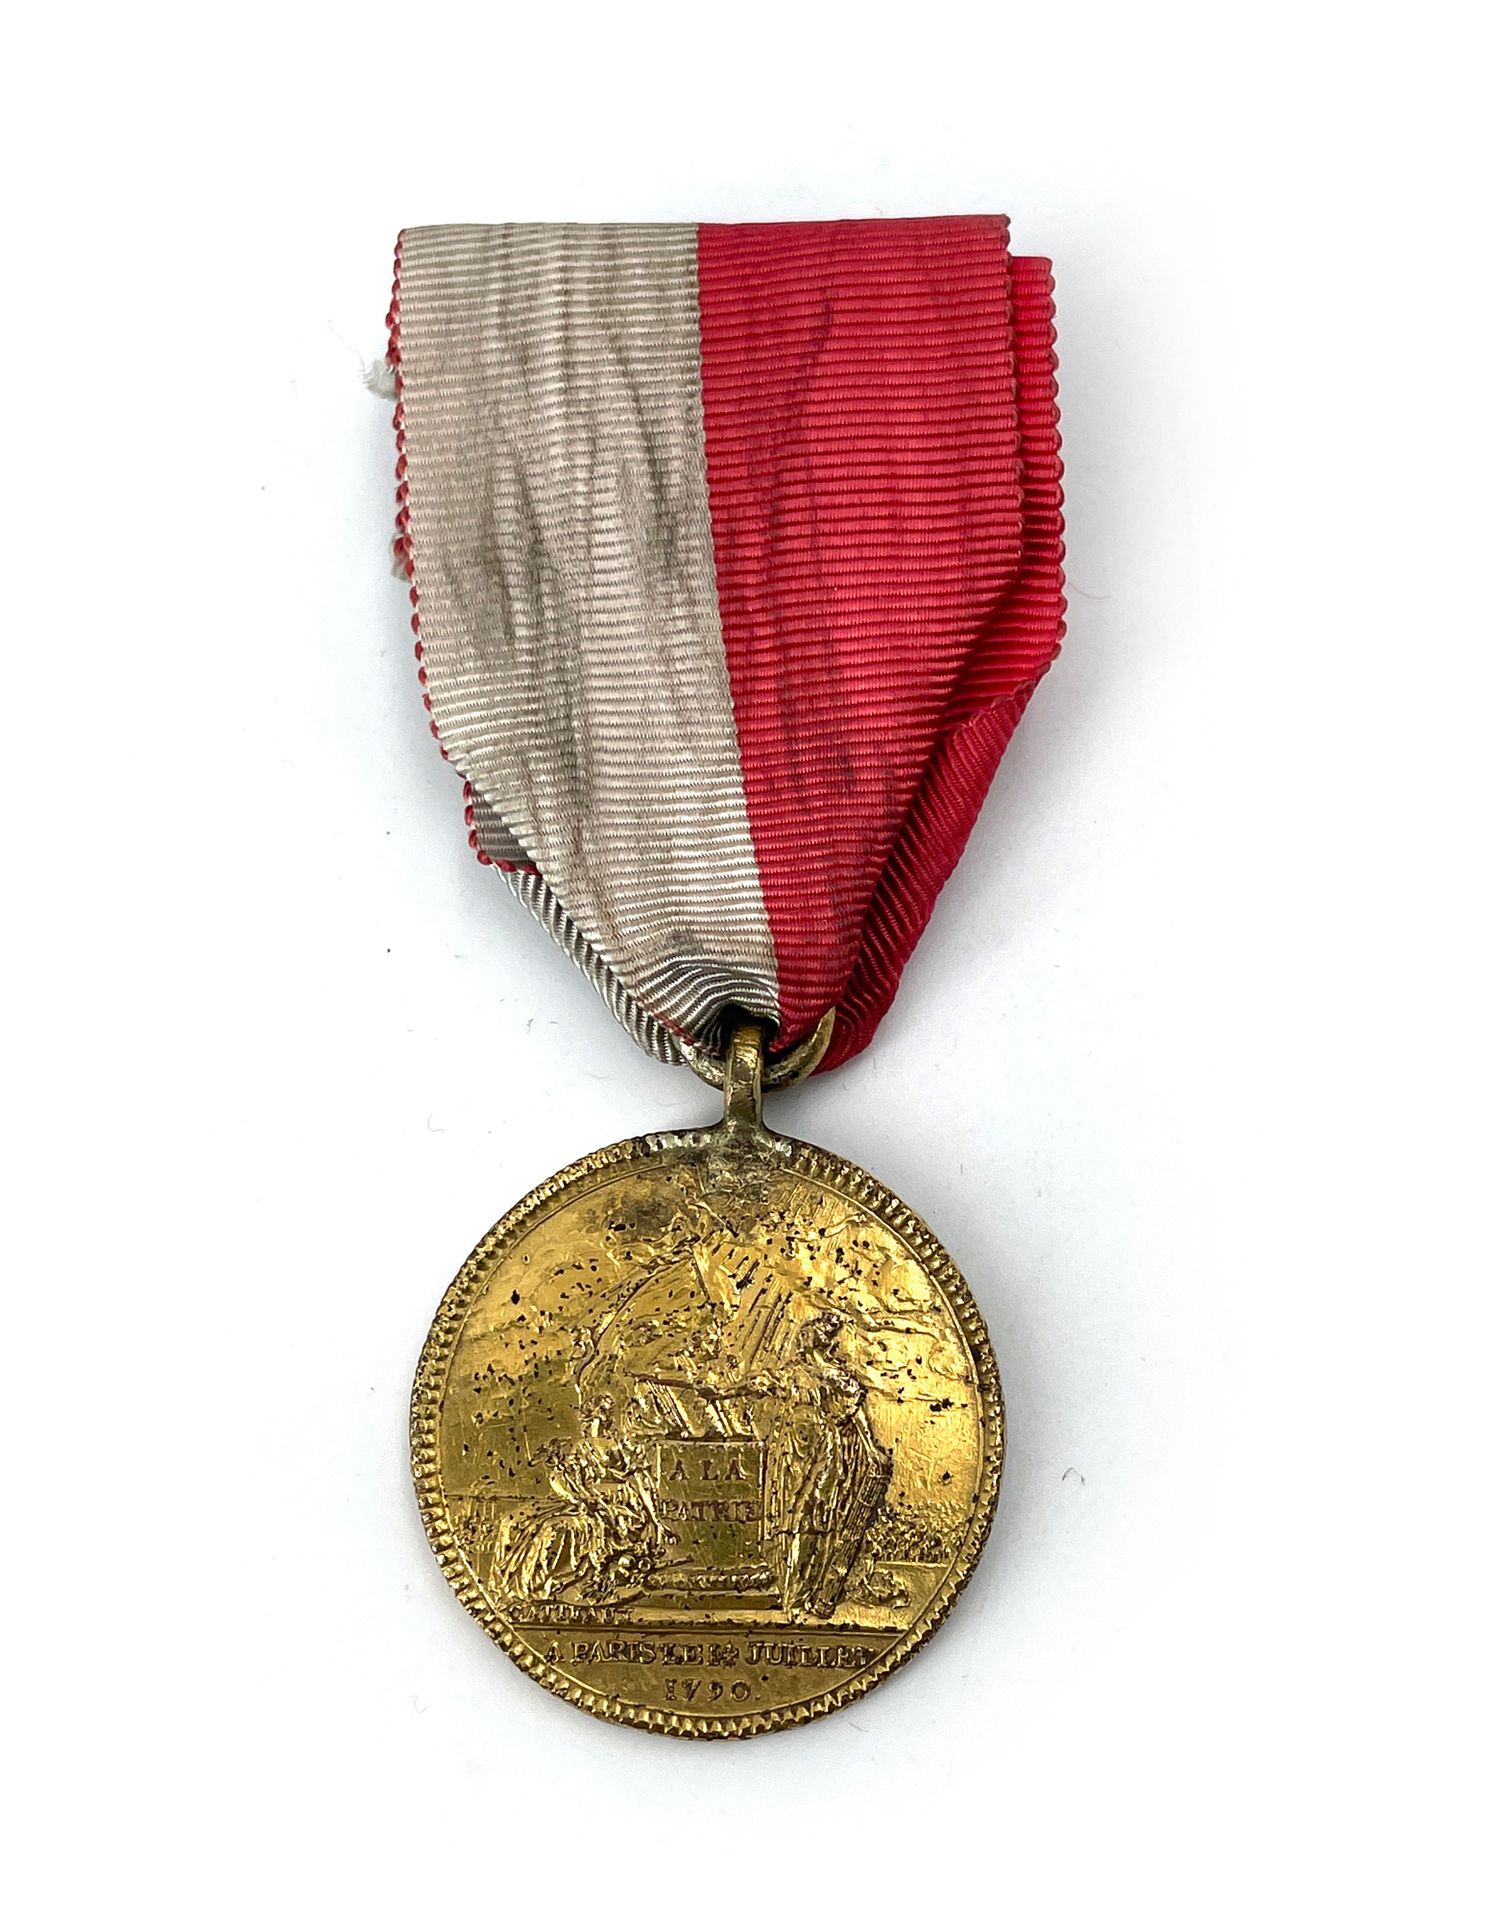 Null 法国联邦勋章由
Gatteaux制作。
鎏金铜质。
绶带。
34mm。